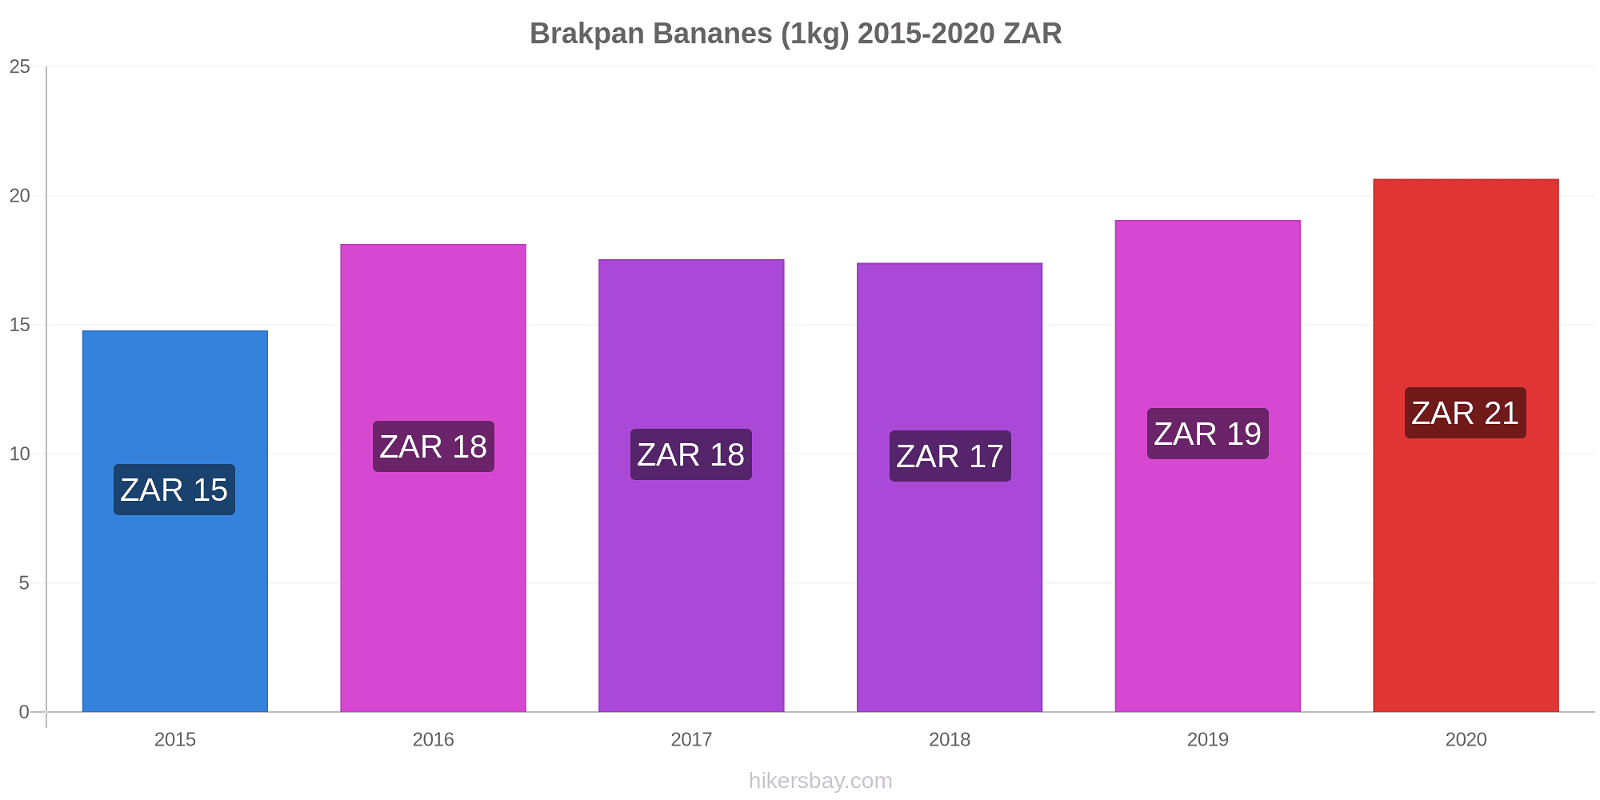 Brakpan changements de prix Bananes (1kg) hikersbay.com